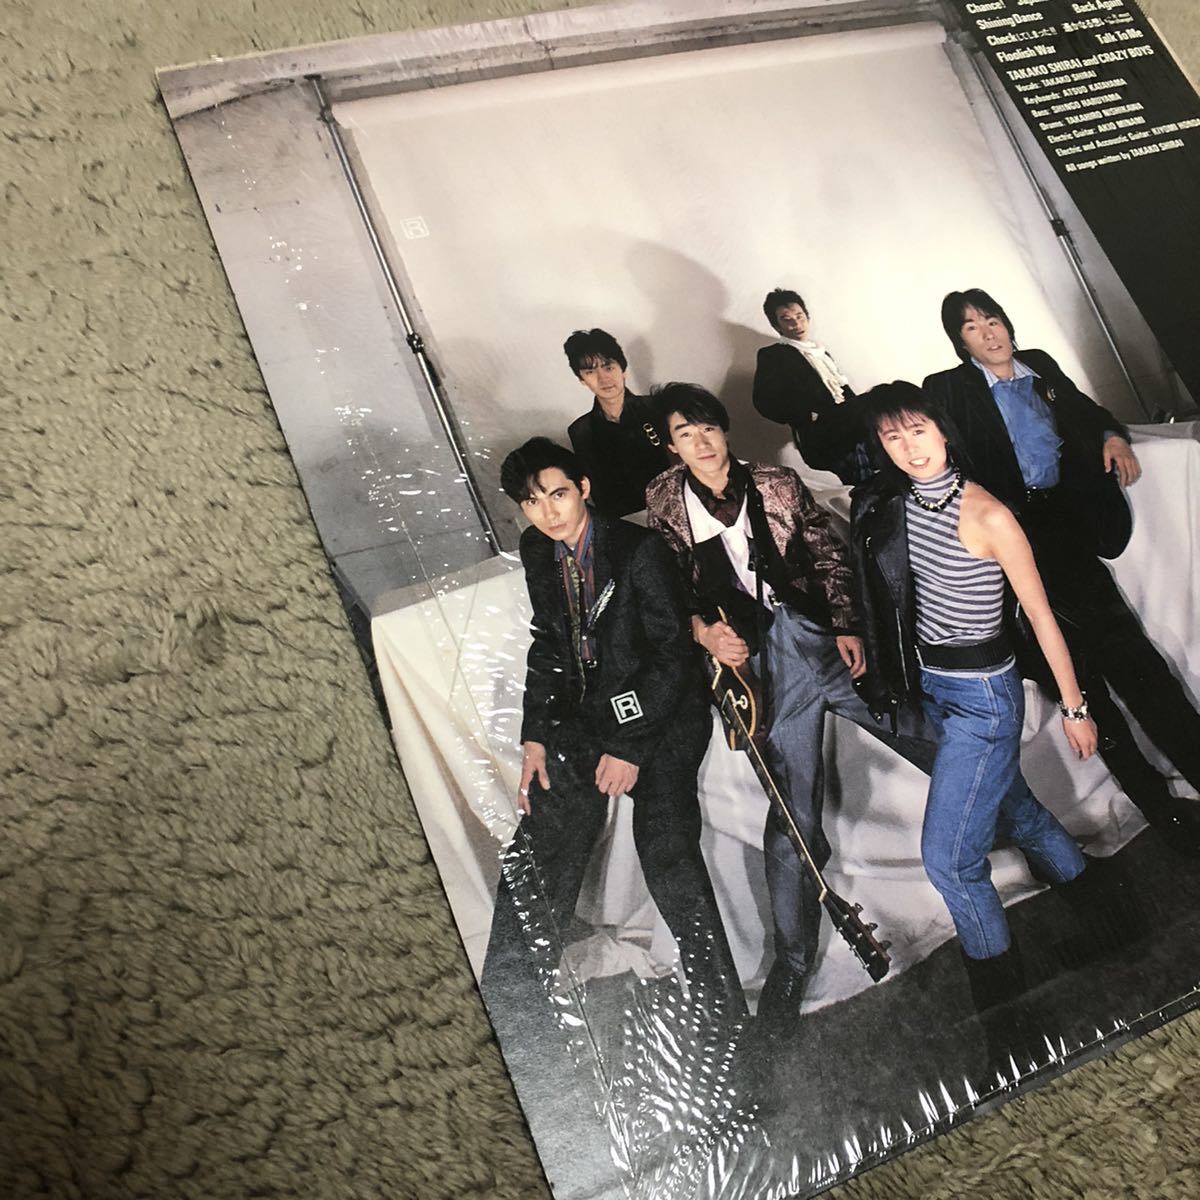 白井貴子&CRAZY BOYS FLOWER POWER / LP レコード / 28AH1847 / カラーブックレット付 / 和バンド 和モノ 80年代 /_画像3